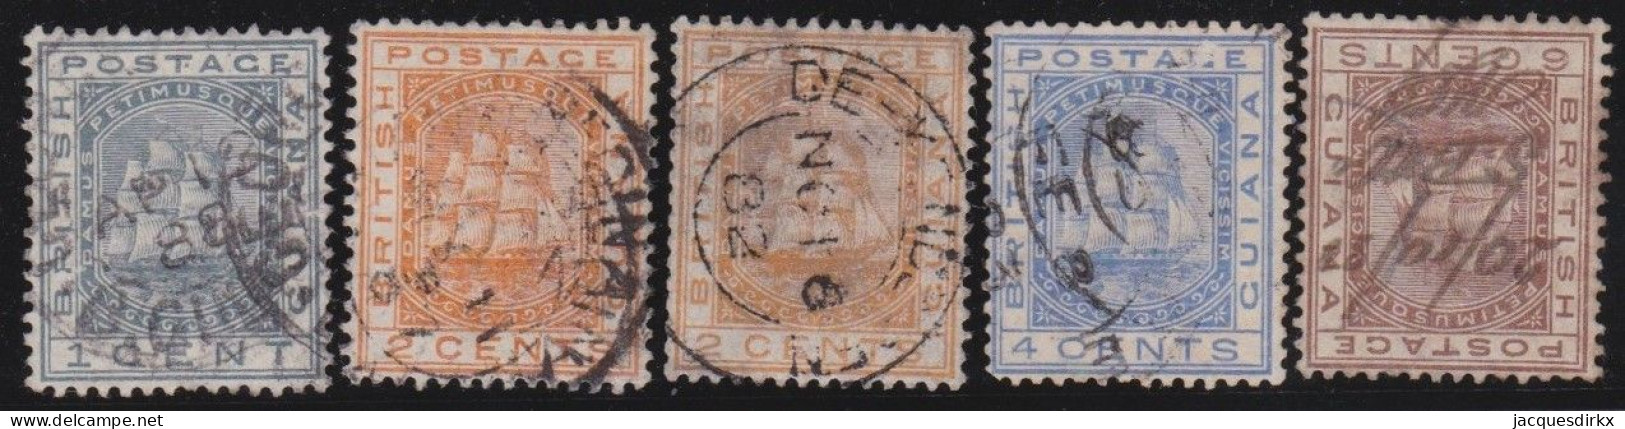 British  Guiana         .   SG    .   170/173      .     O (172: Minor Thin Spot)      .    Cancelled - Guyana Britannica (...-1966)